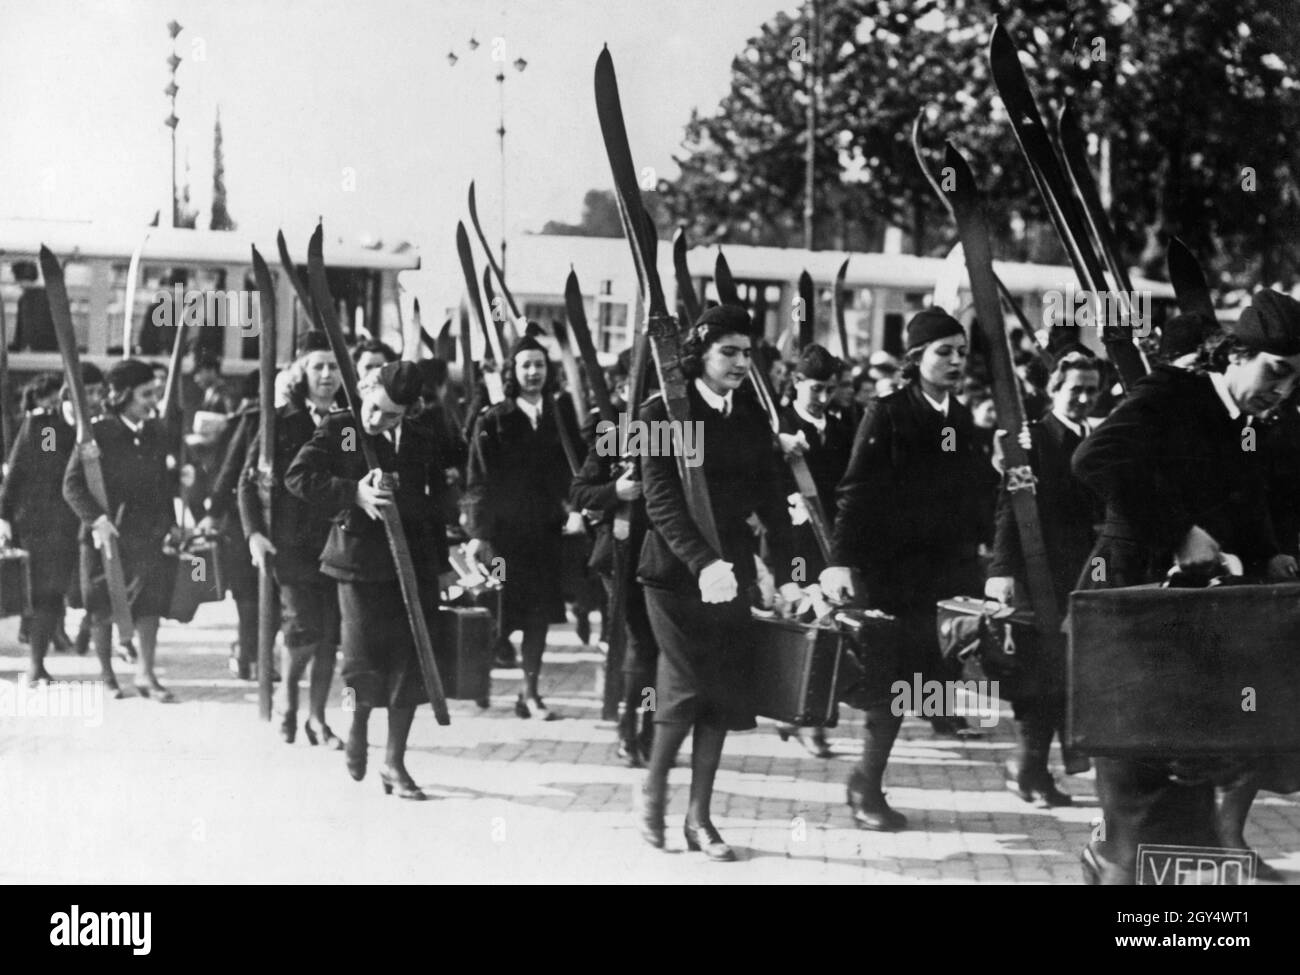 A Roma, il 26 o il 27 maggio 1939, davanti a Benito Mussolini si è svolta una grande sfilata con decine di migliaia di partecipanti provenienti da organizzazioni femminili fasciste di tutte le regioni italiane. L'immagine mostra un gruppo di giovani donne appartenenti ad una sezione sciistica di un'organizzazione fascista femminile. [traduzione automatizzata] Foto Stock